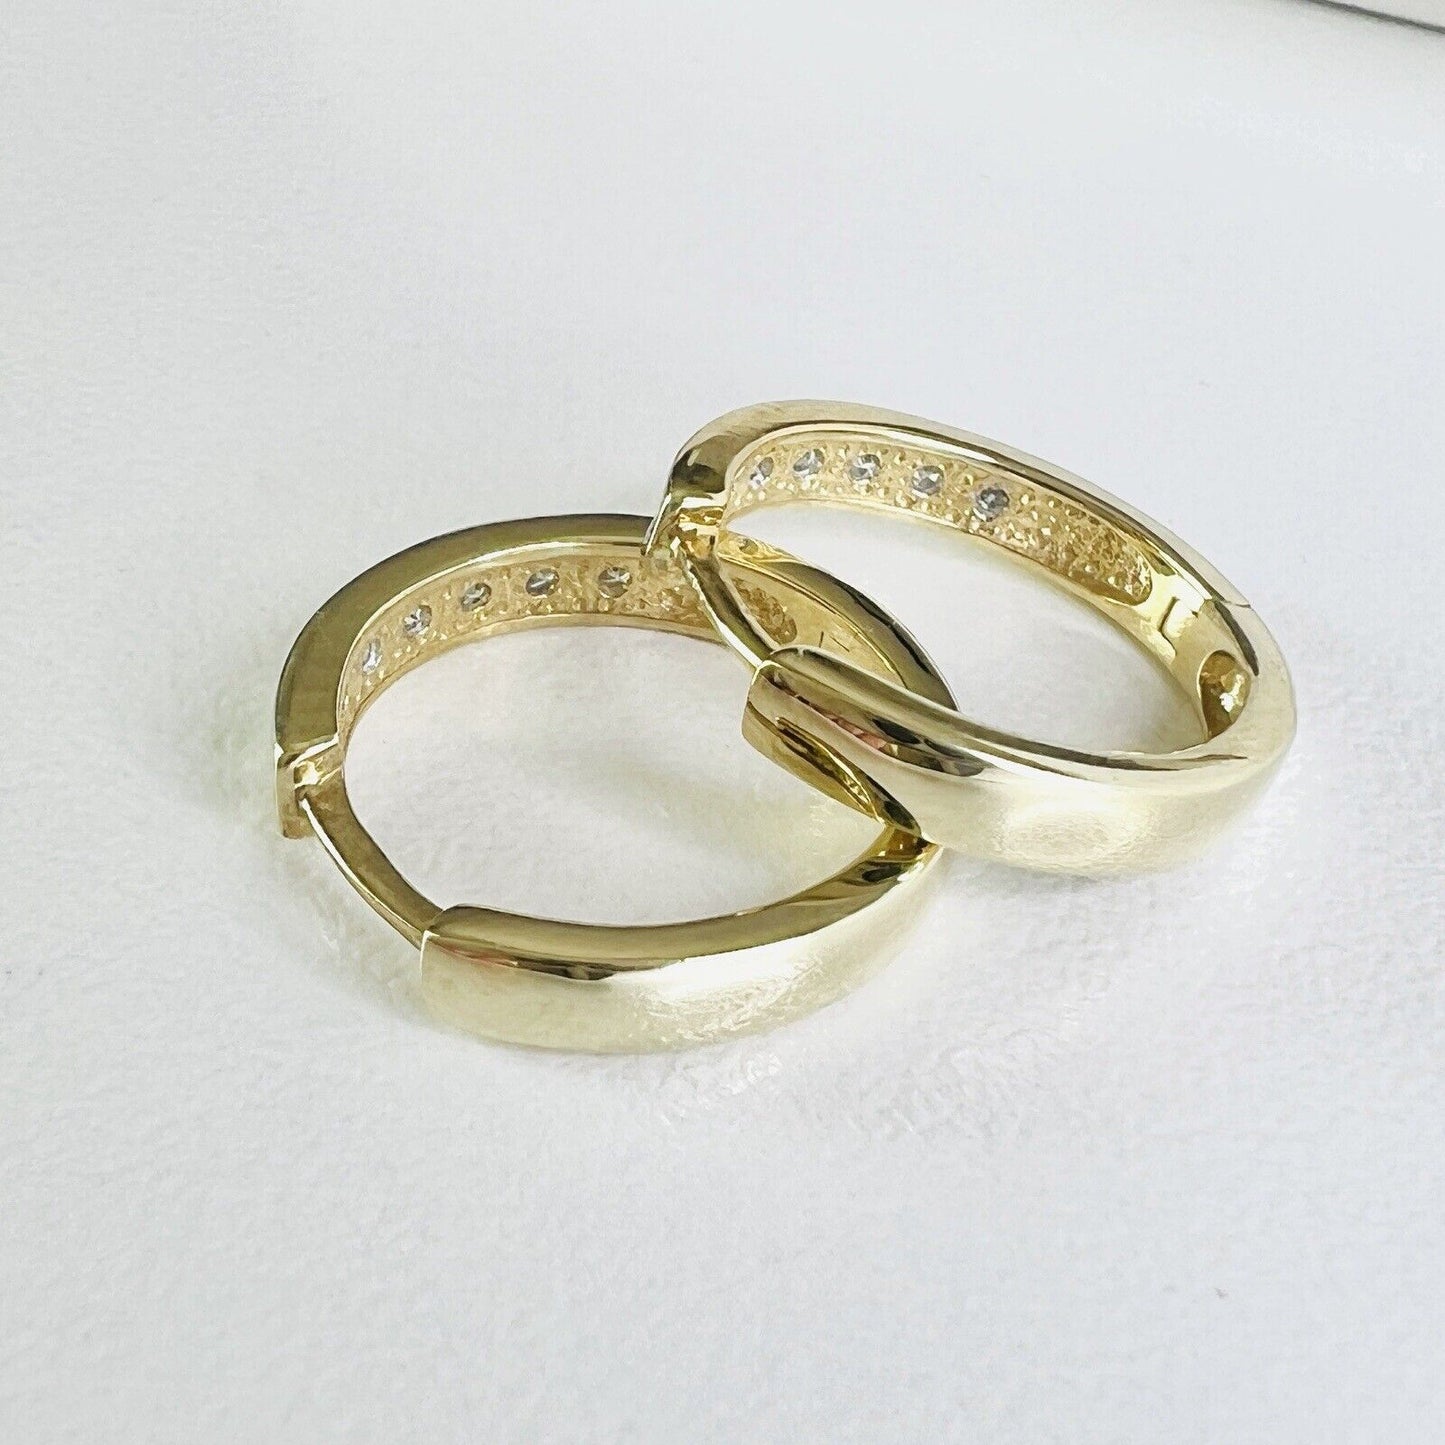 Solid 10k Yellow Gold Genuine Diamond Hoop (0.66") Earrings, New